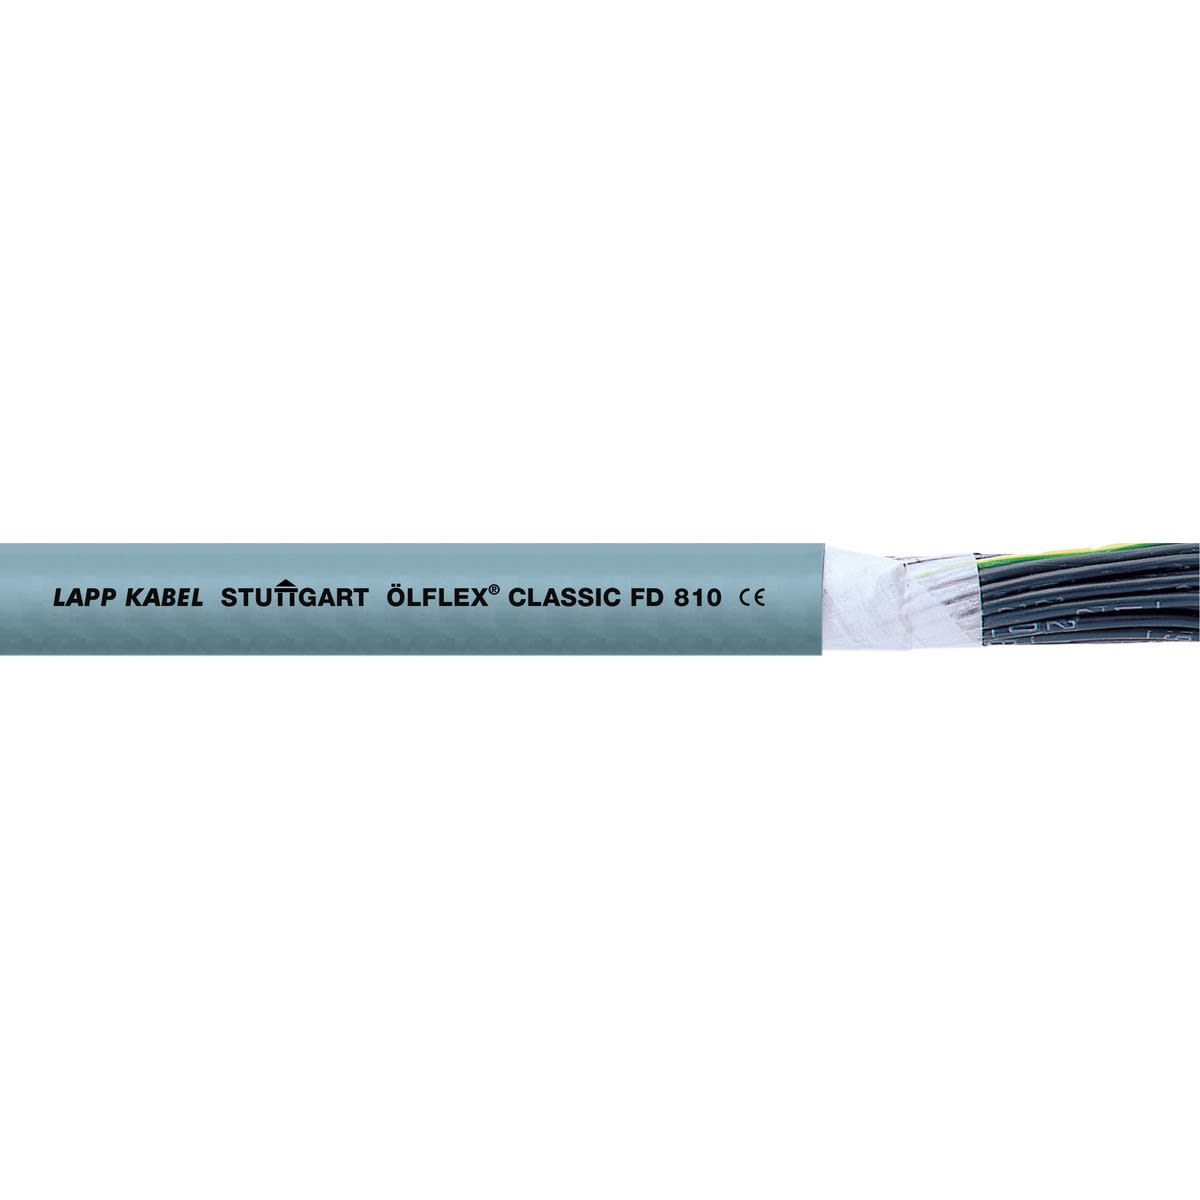 Lapp - ÖLFLEX CLASSIC FD 810 5G6